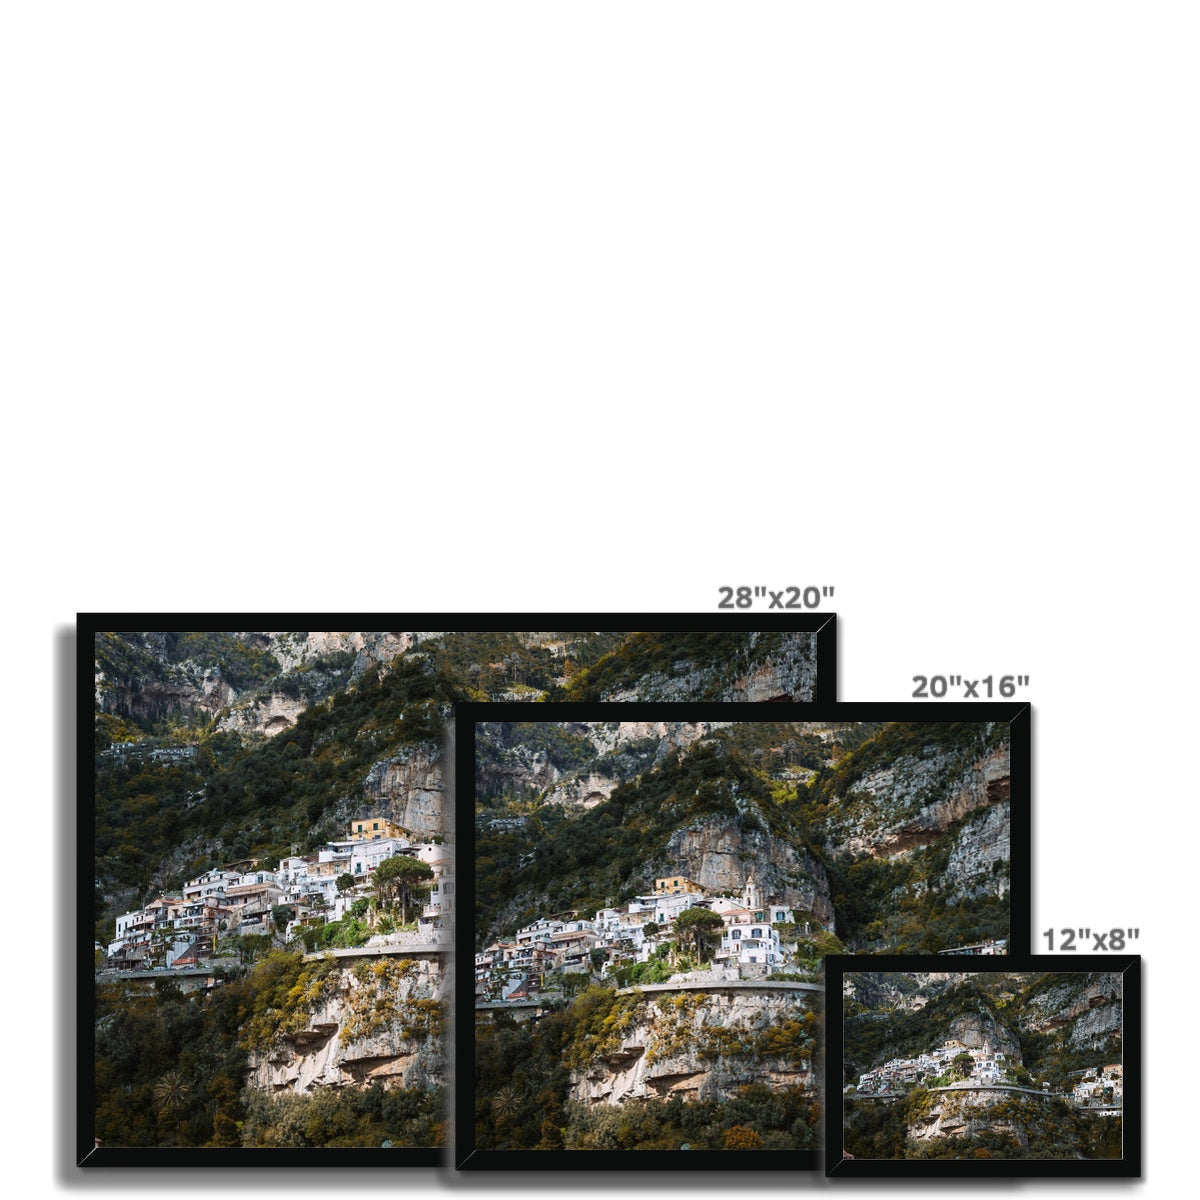 Positano Cliffs Framed Print